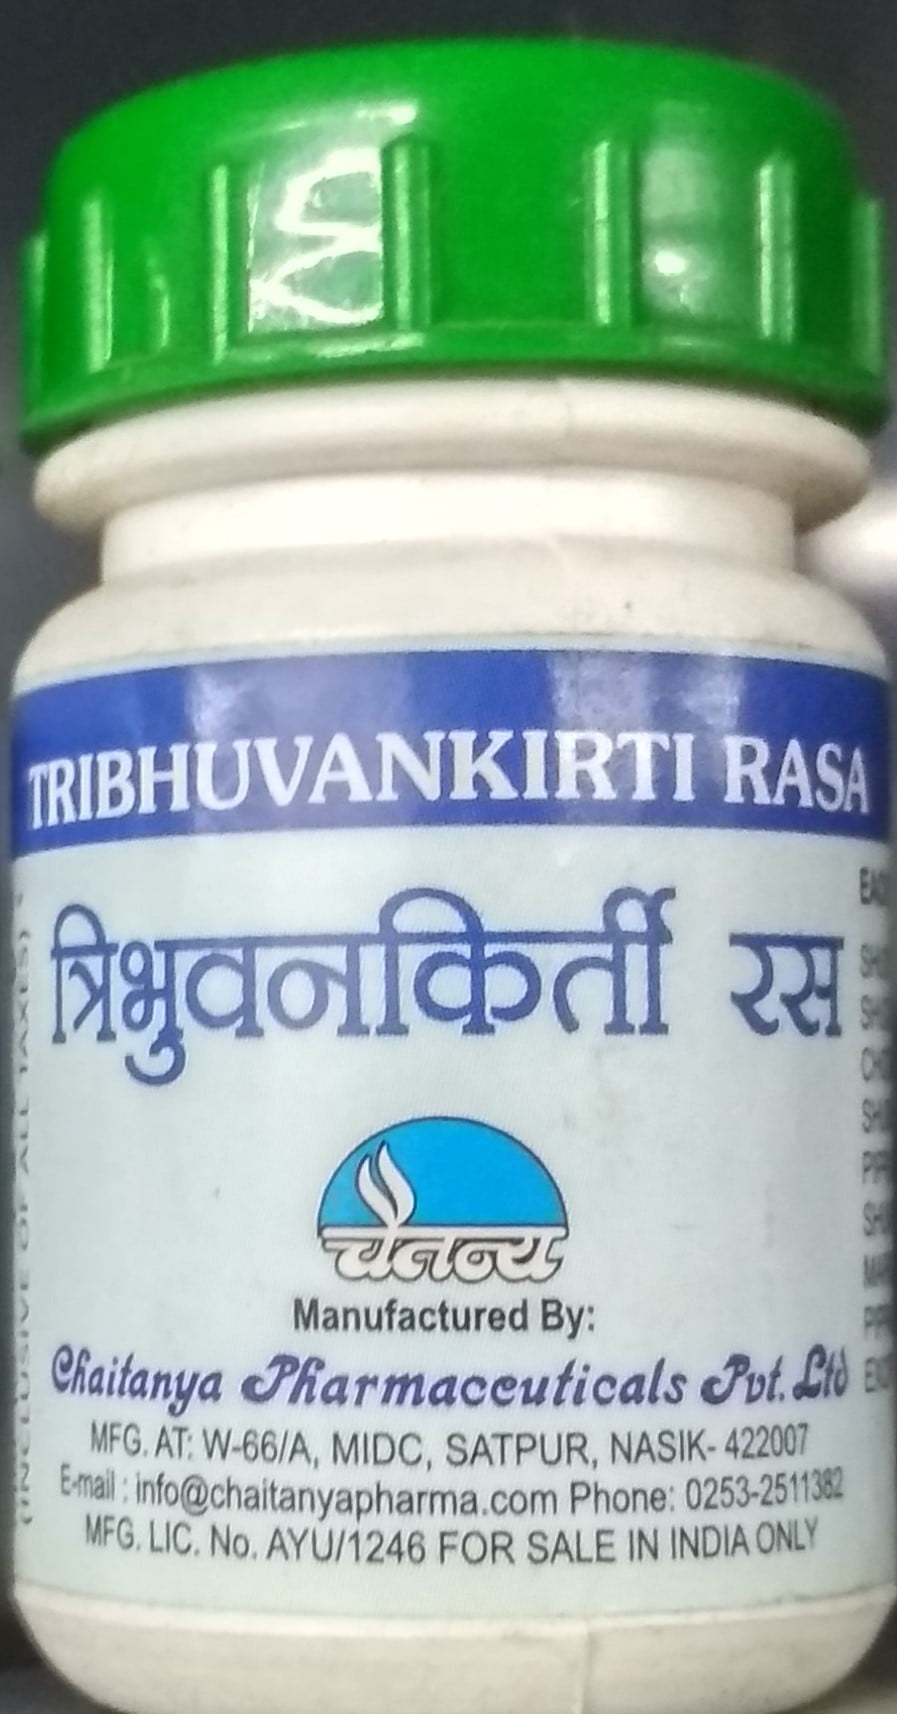 tribhuvankirti rasa 60tab upto 20% off chaitanya pharmaceuticals